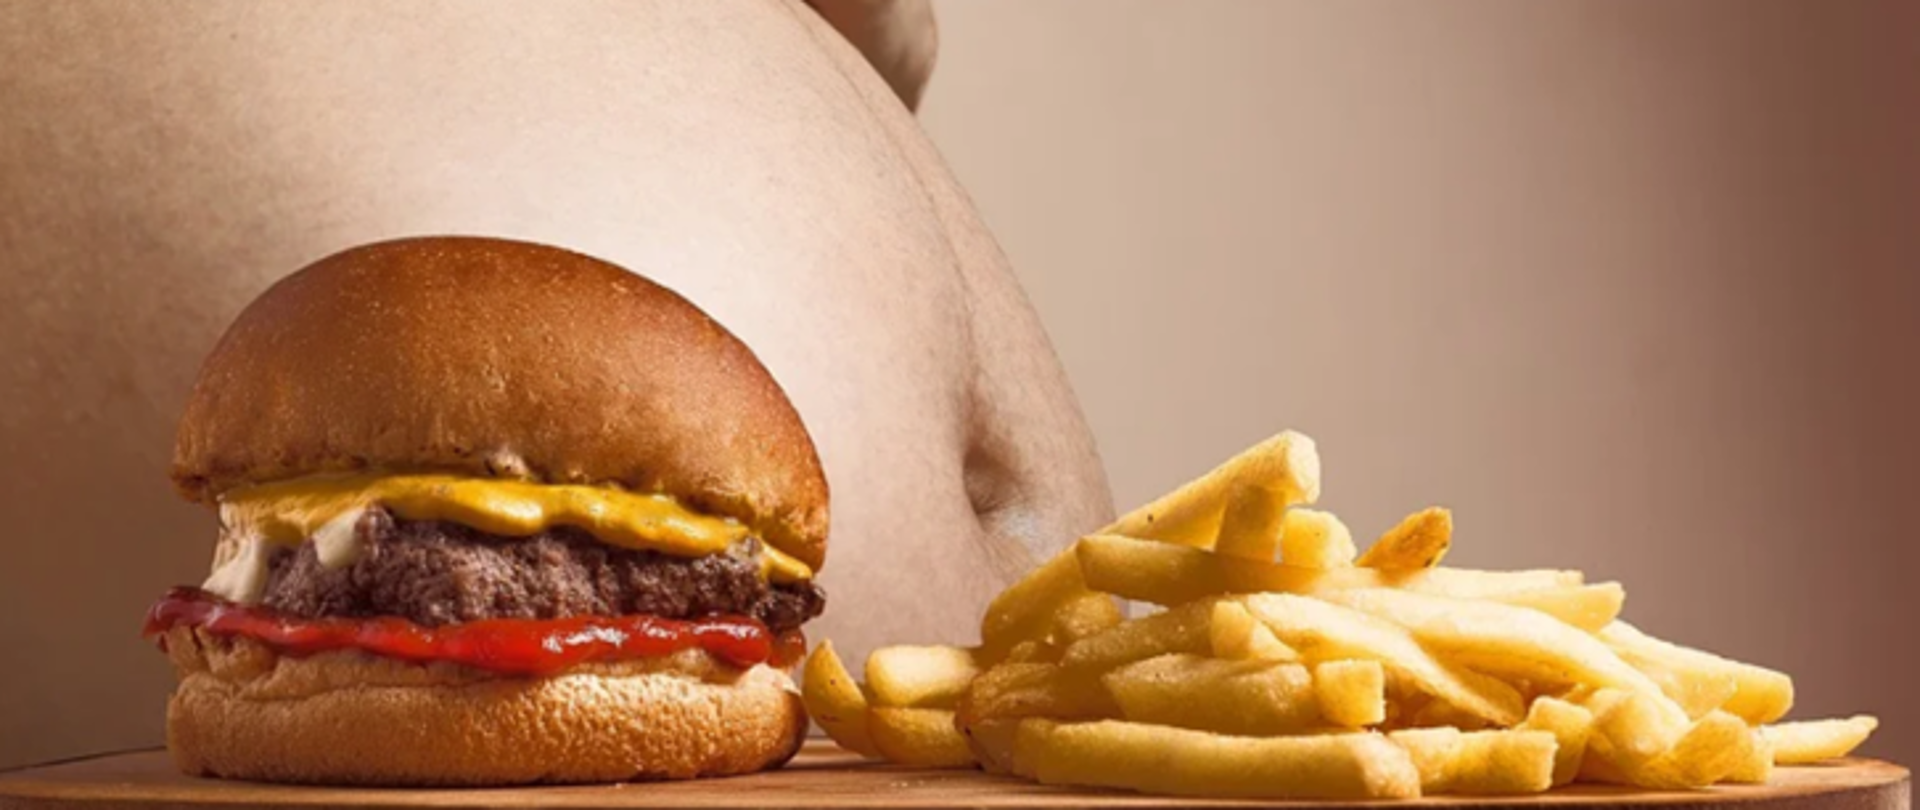 Na zdjęciu po lewej stronie widoczny jest burger, natomiast po prawej frytki. W tle widoczny jest brzuch osoby otyłej.